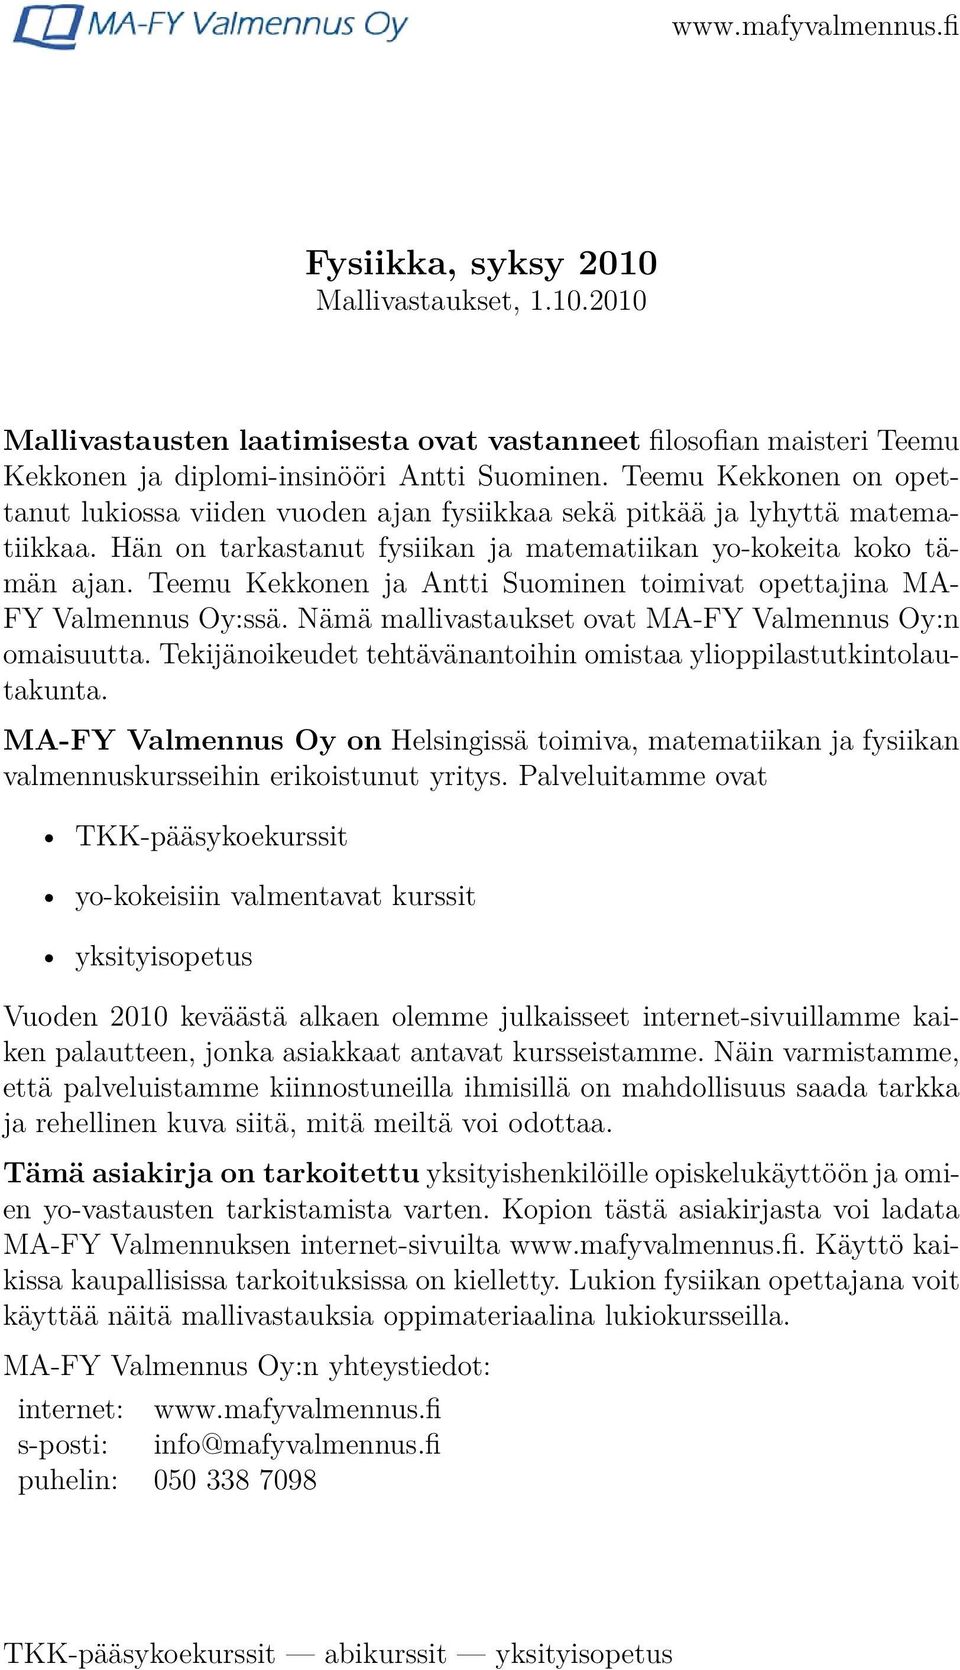 Teemu Kekkonen ja Antti Suominen toimivat opettajina MA- FY Valmennus Oy:ssä. Nämä mallivastaukset ovat MA-FY Valmennus Oy:n omaisuutta.